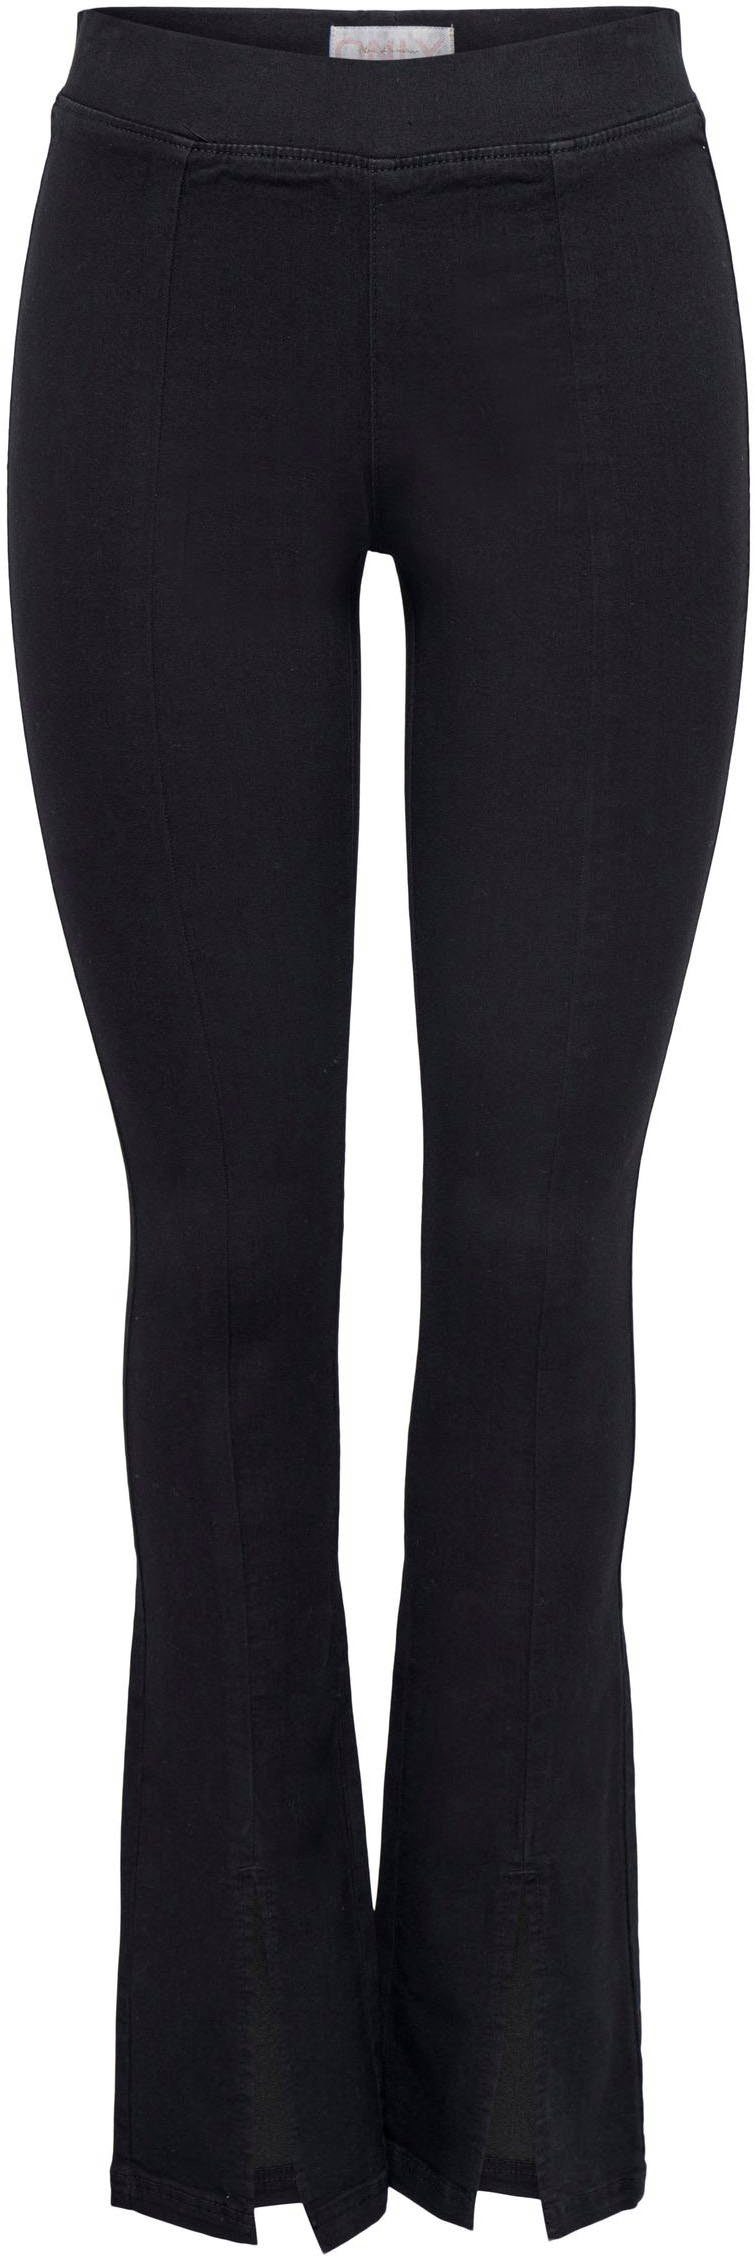 ONLY Skinny-fit-Jeans ONLPAIGE HW SKINNY Stretch-Anteil Baumwollmischung Aus FRONT Passform elastischer PIMBOX, für eine optimale mit DNM SLIT